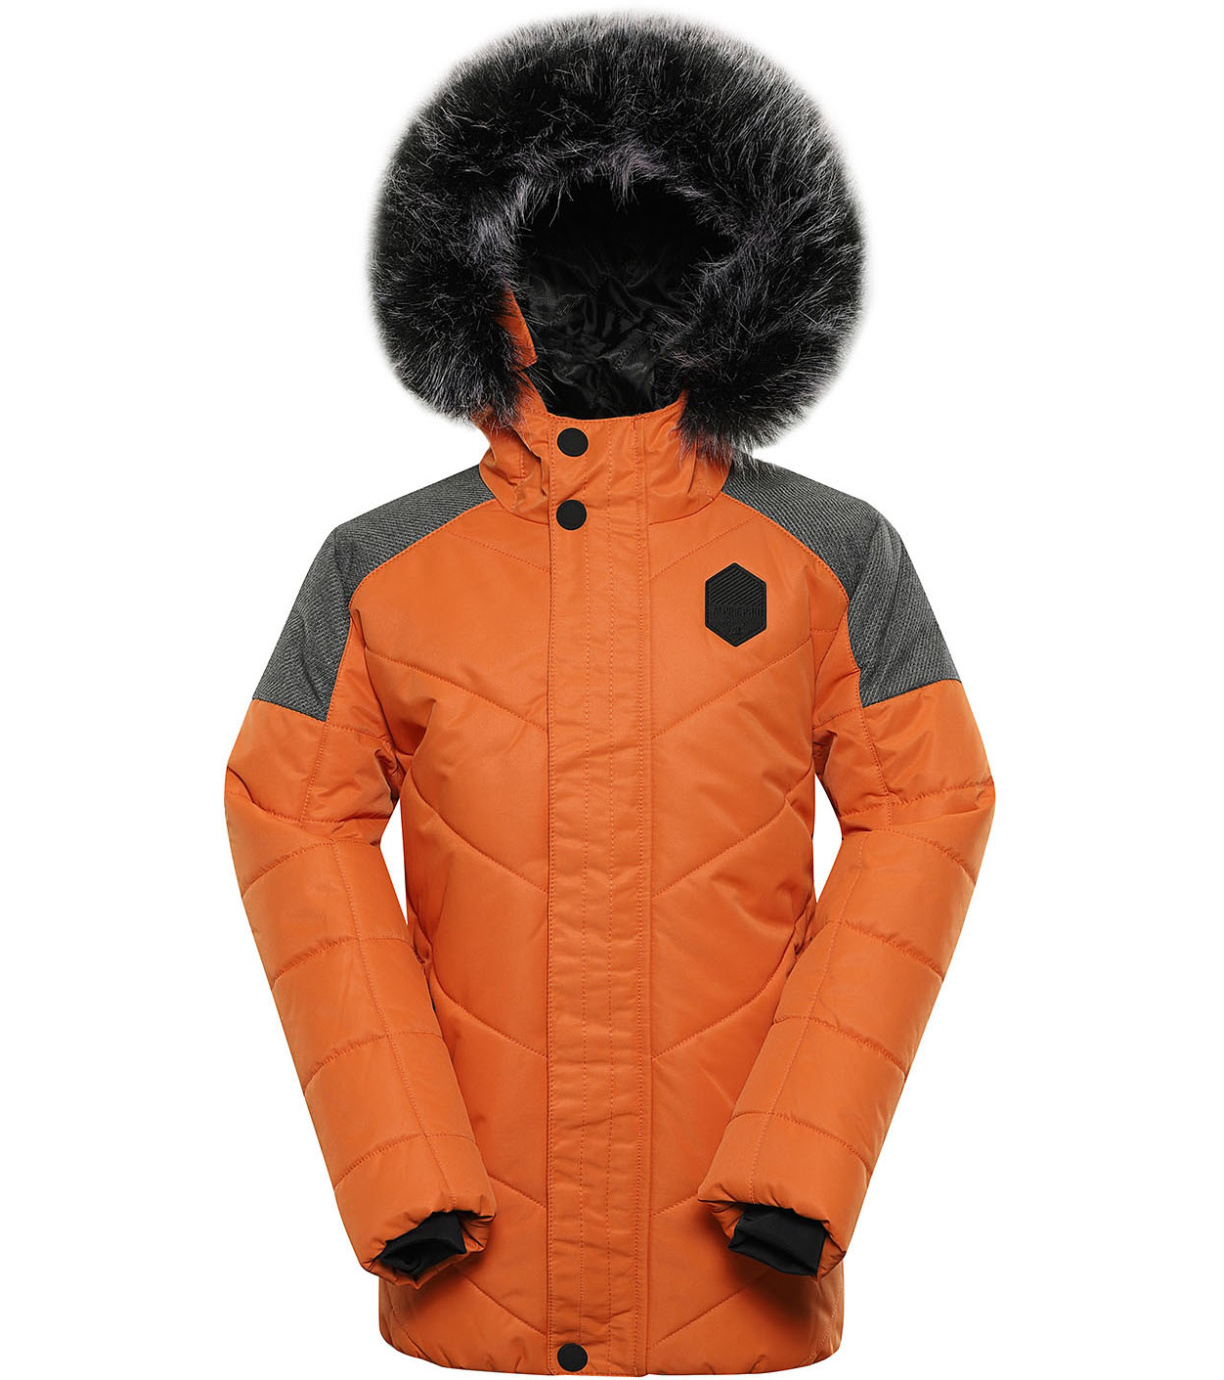 Dětská zimní bunda ICYBO 5 ALPINE PRO spáleně oranžová